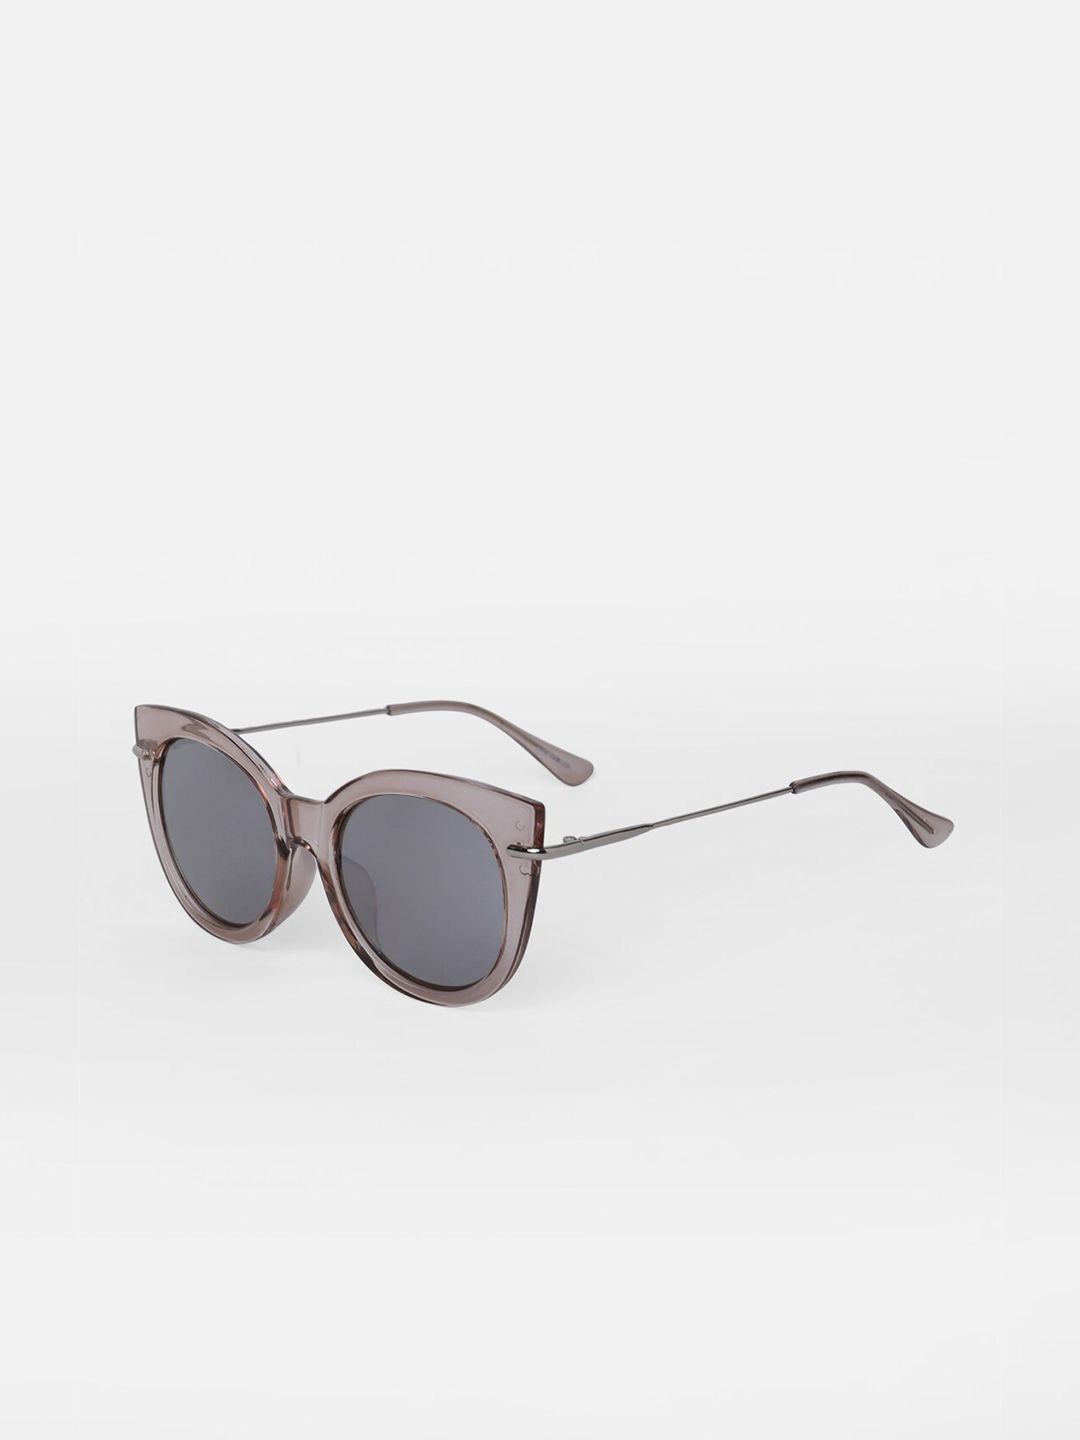 Vero Moda Women Grey Lens & Silver-Toned Cateye Sunglasses Price in India